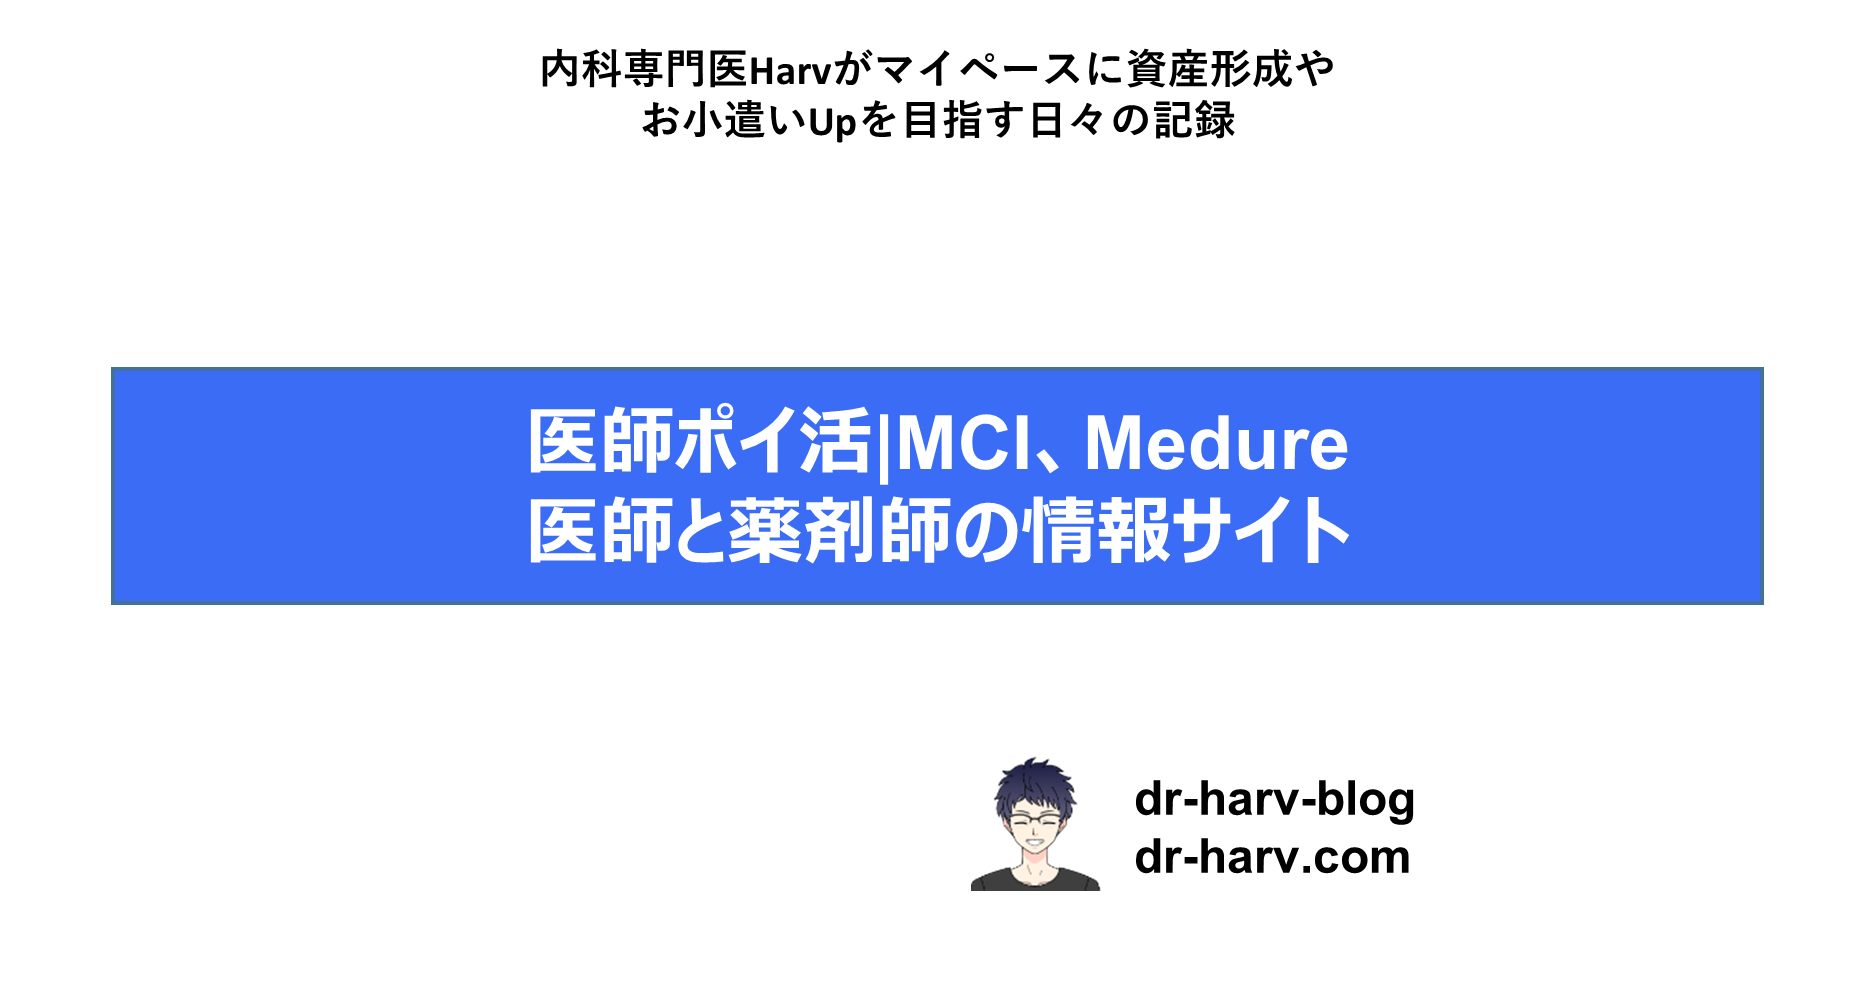 MCI/Medure